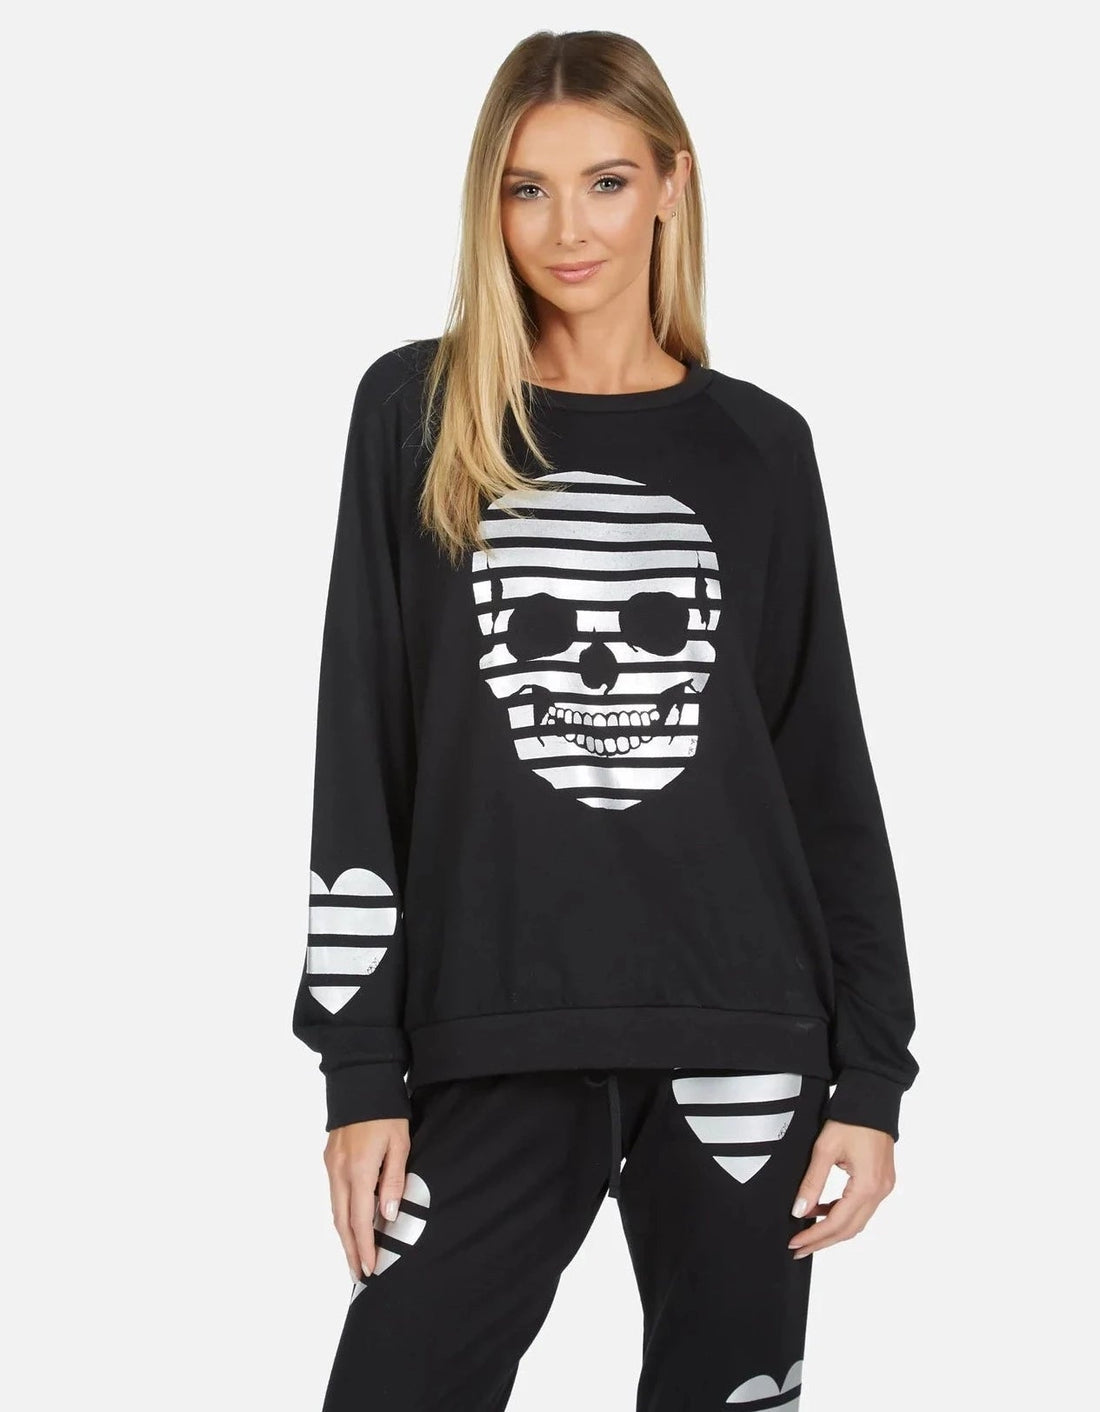 Shop Lauren Moshi Noleta Stripe Skull Sweater - Premium Pullover from Lauren Moshi Online now at Spoiled Brat 